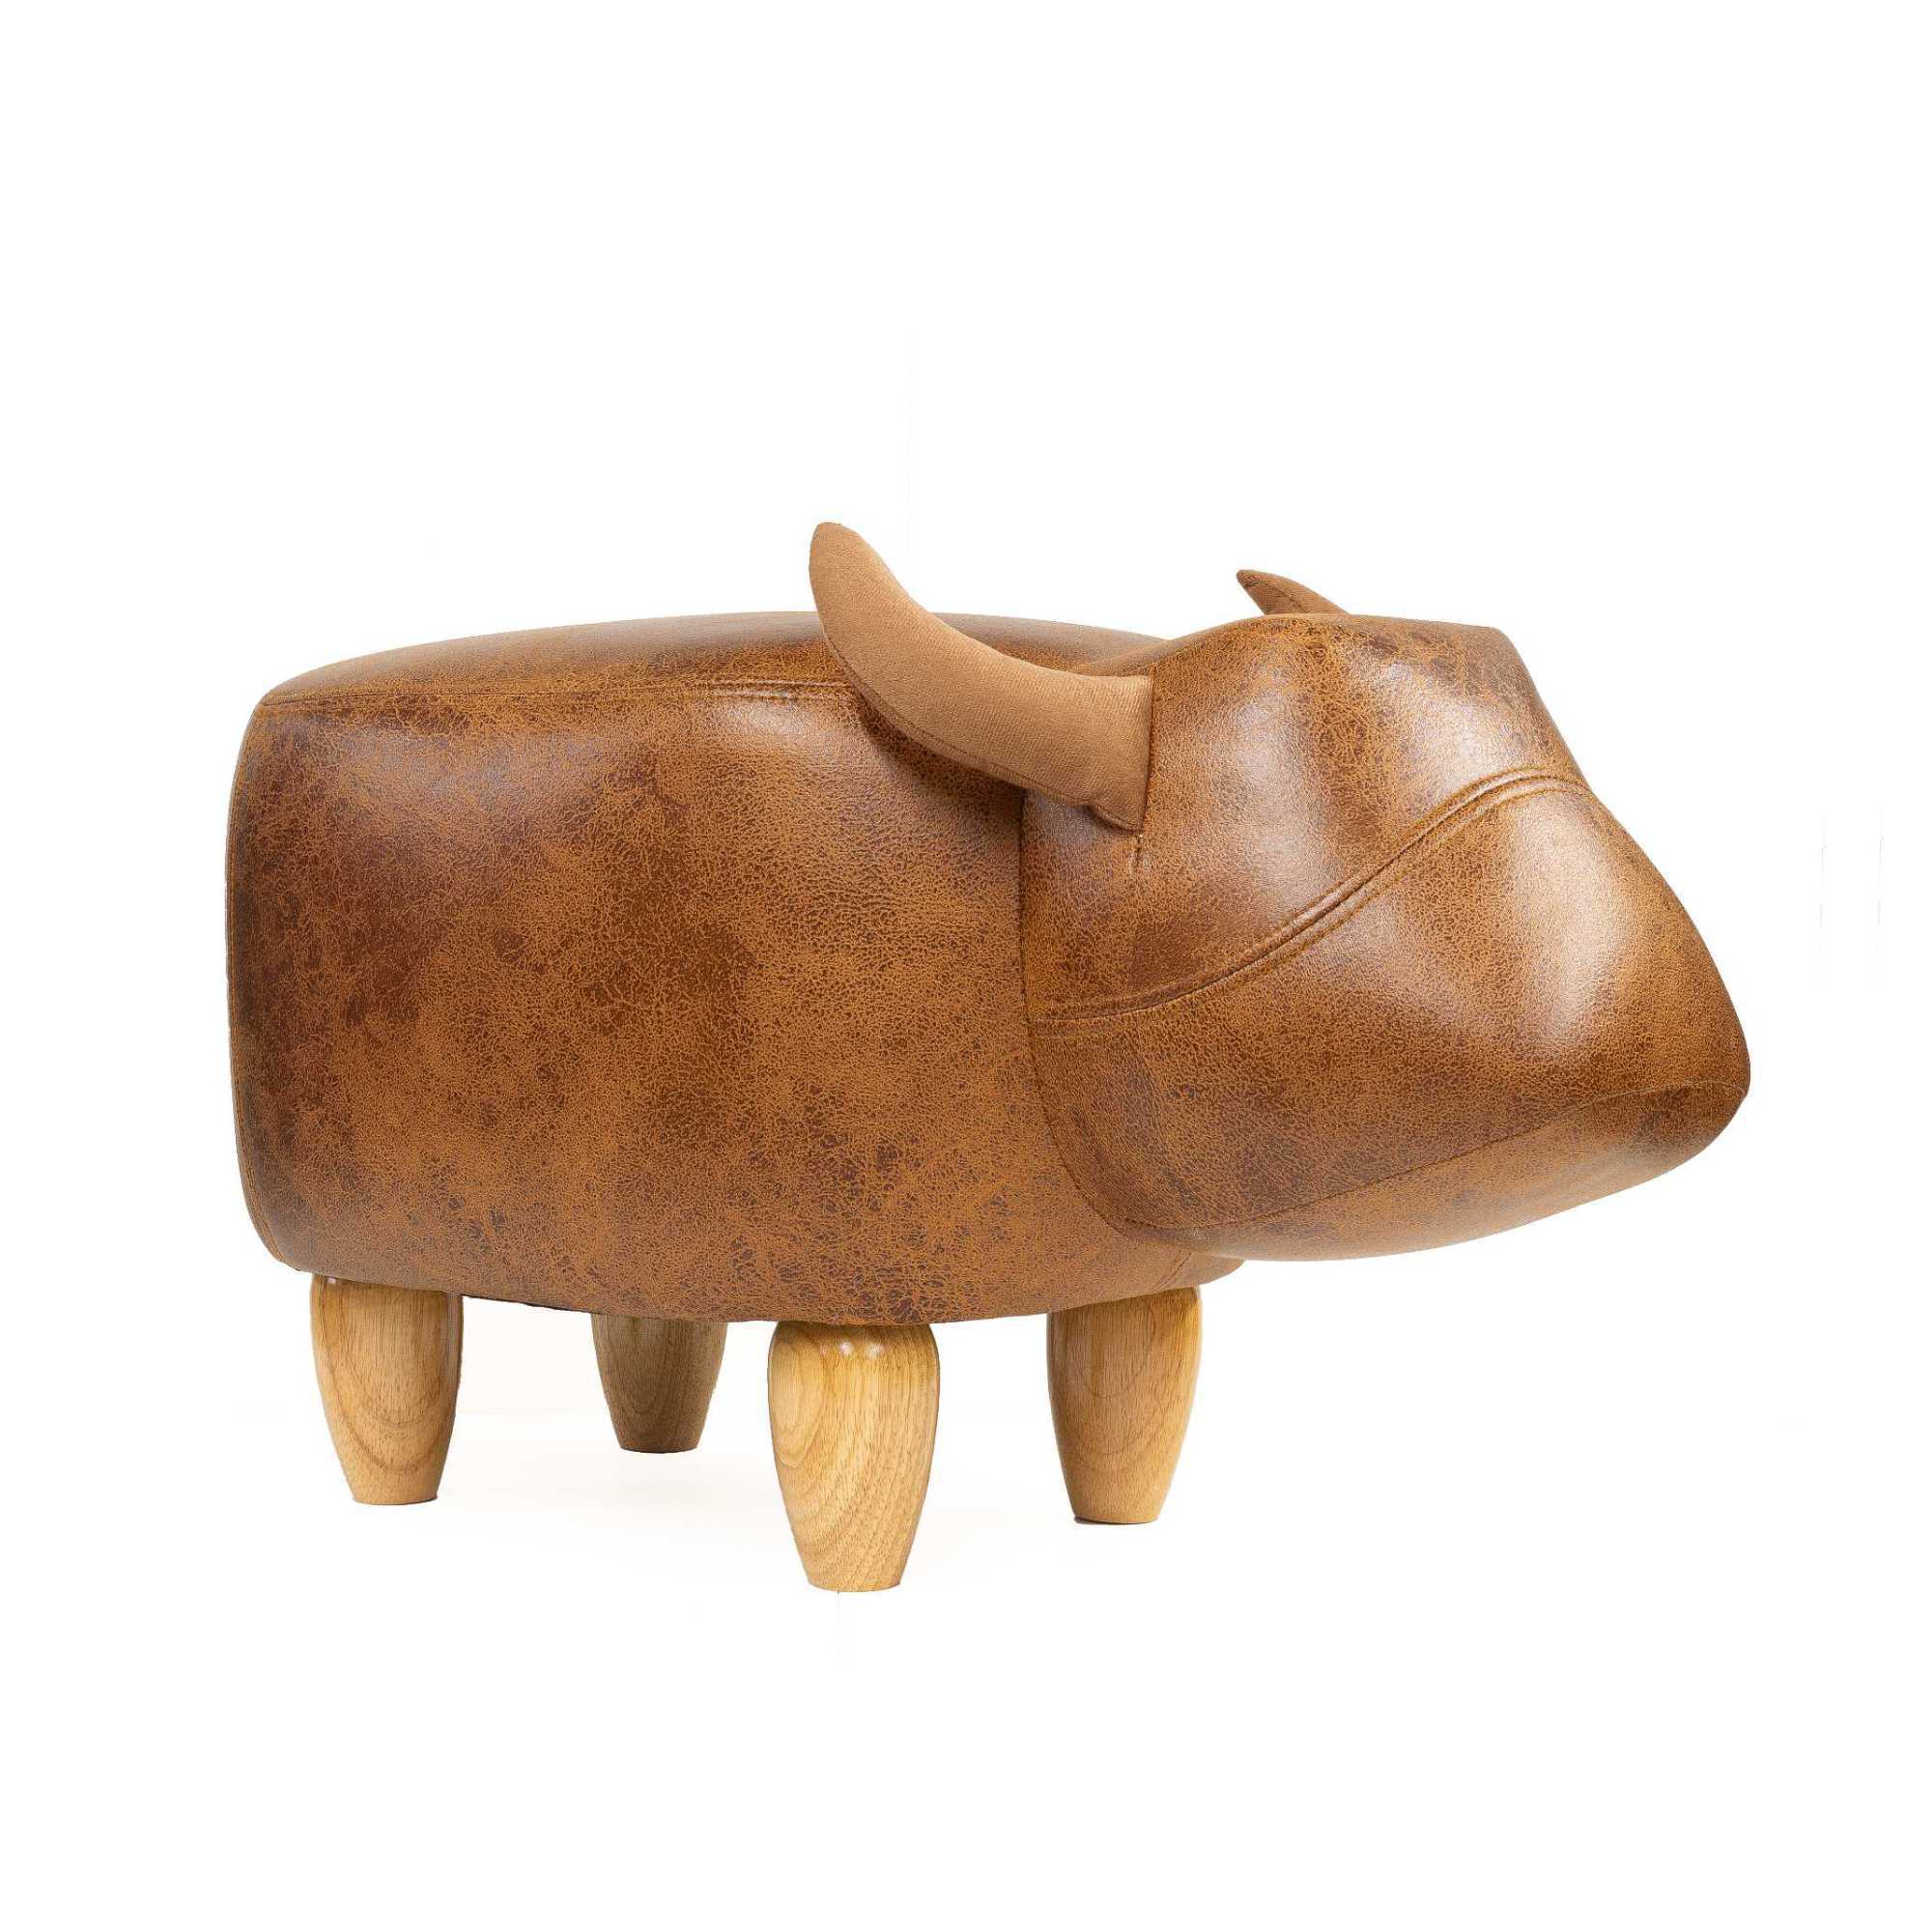 Liberty animal stool, brown cow